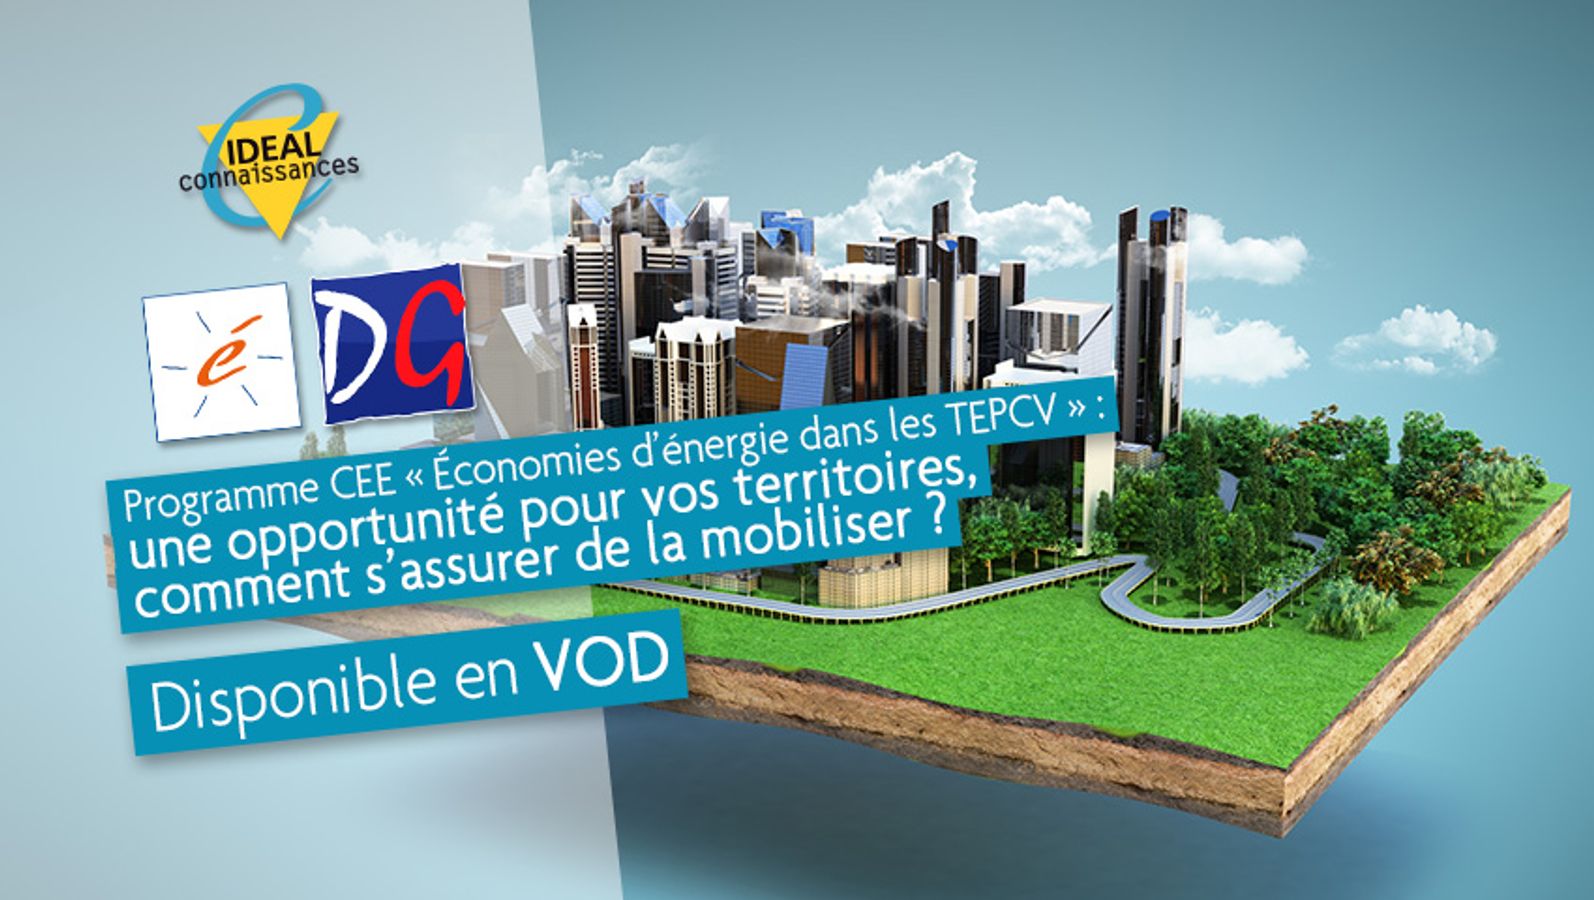 Programme CEE « Économies d’énergie dans les TEPCV » : une opportunité pour vos territoires, comment s’assurer de la mobiliser ?